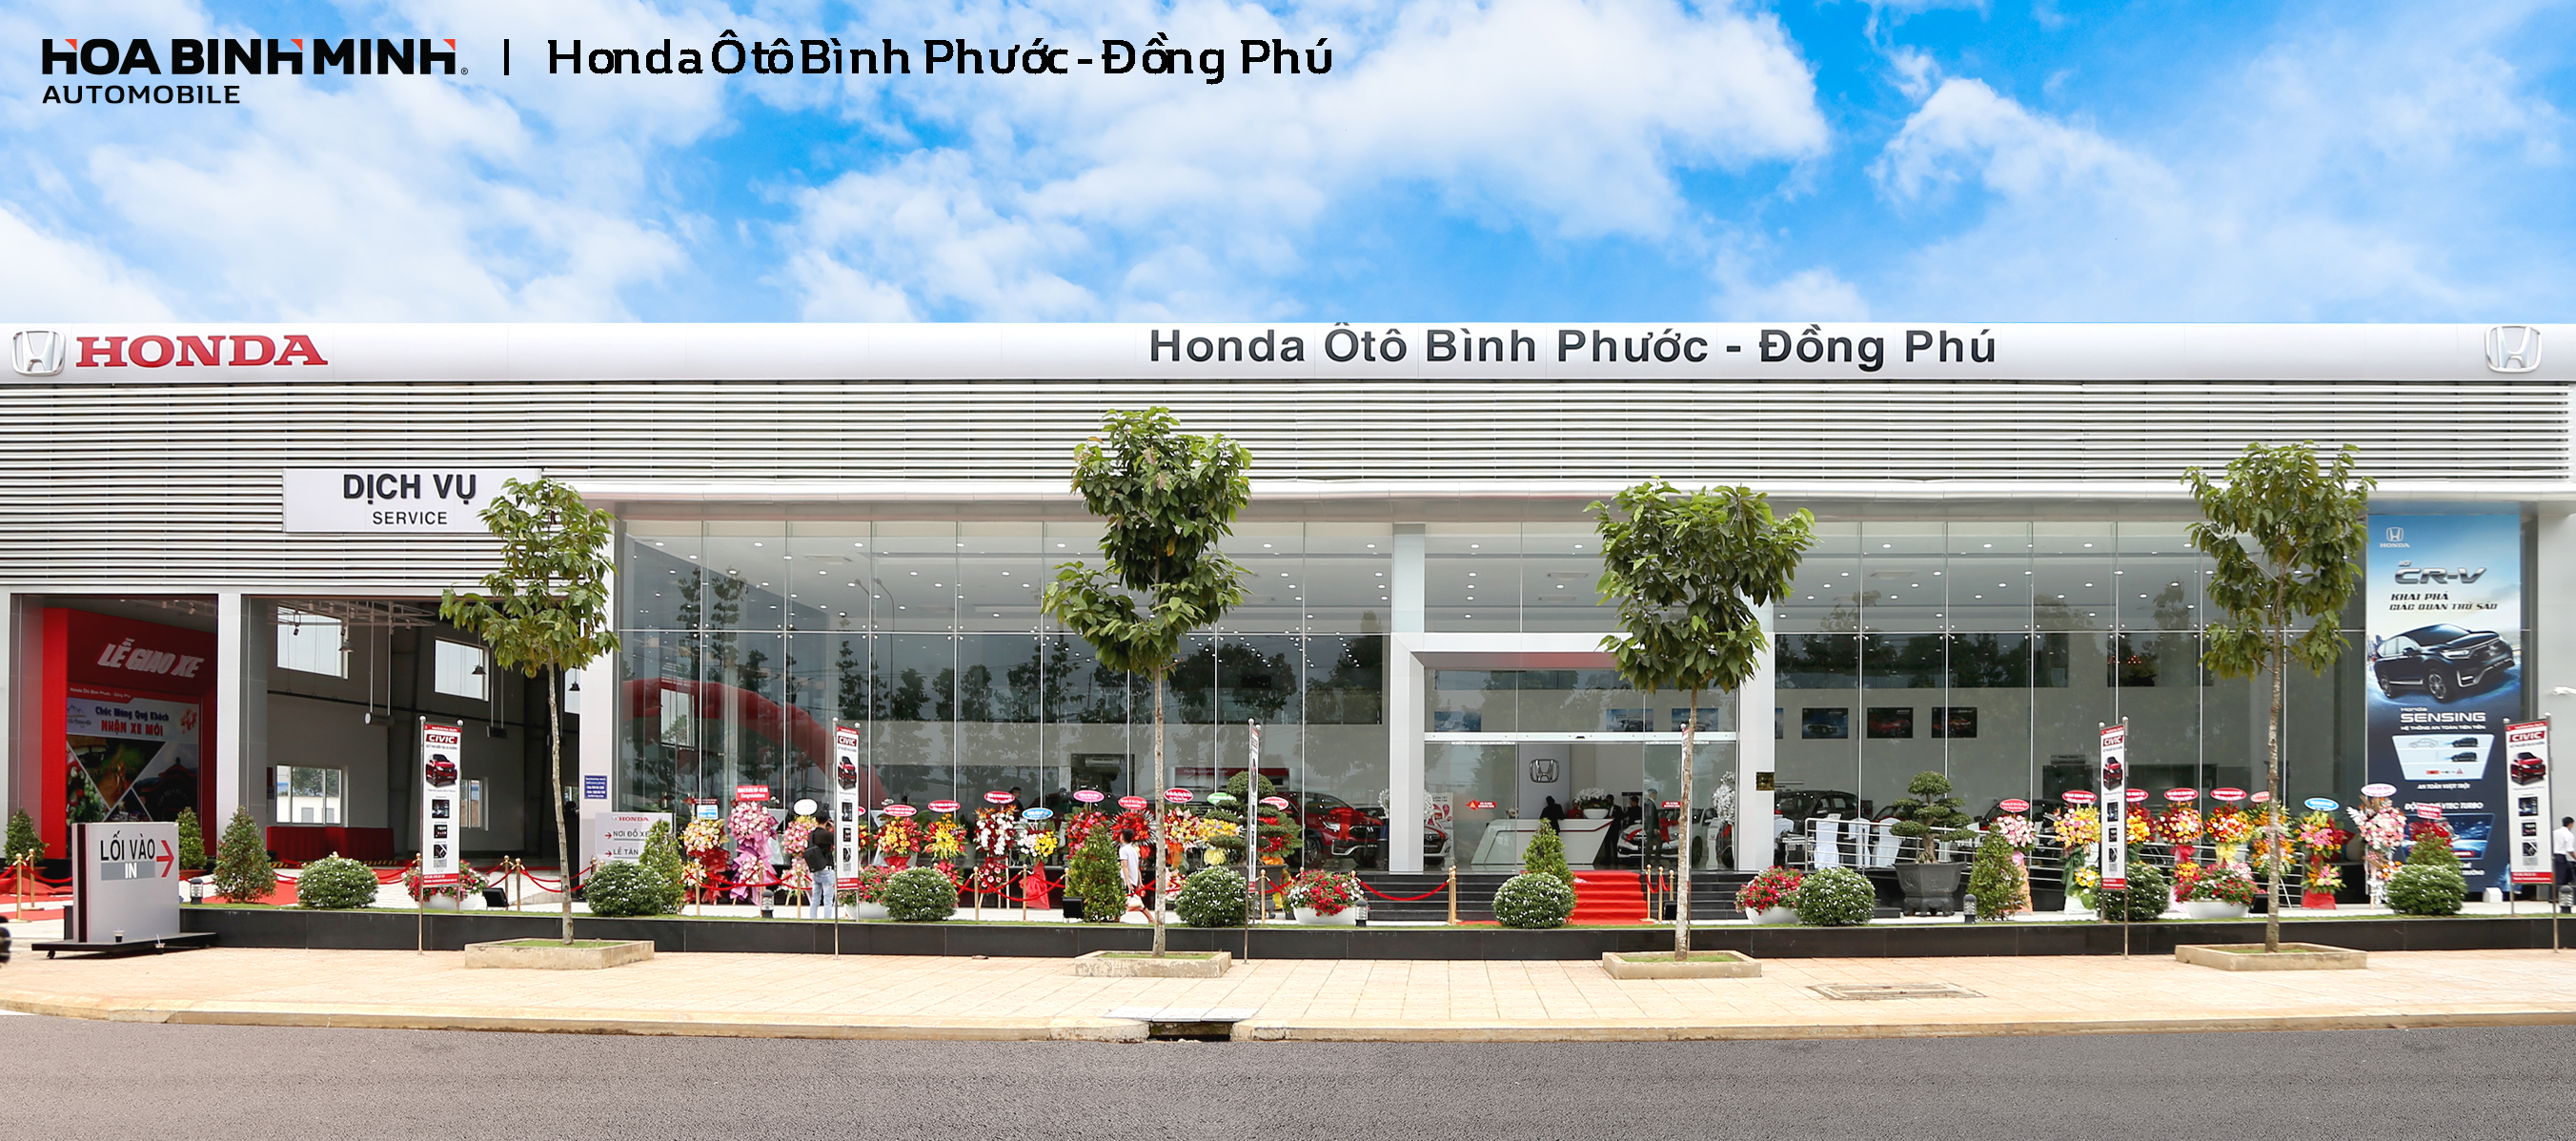 Giới Thiệu - Honda Ôtô Bình Phước - Đồng Phú